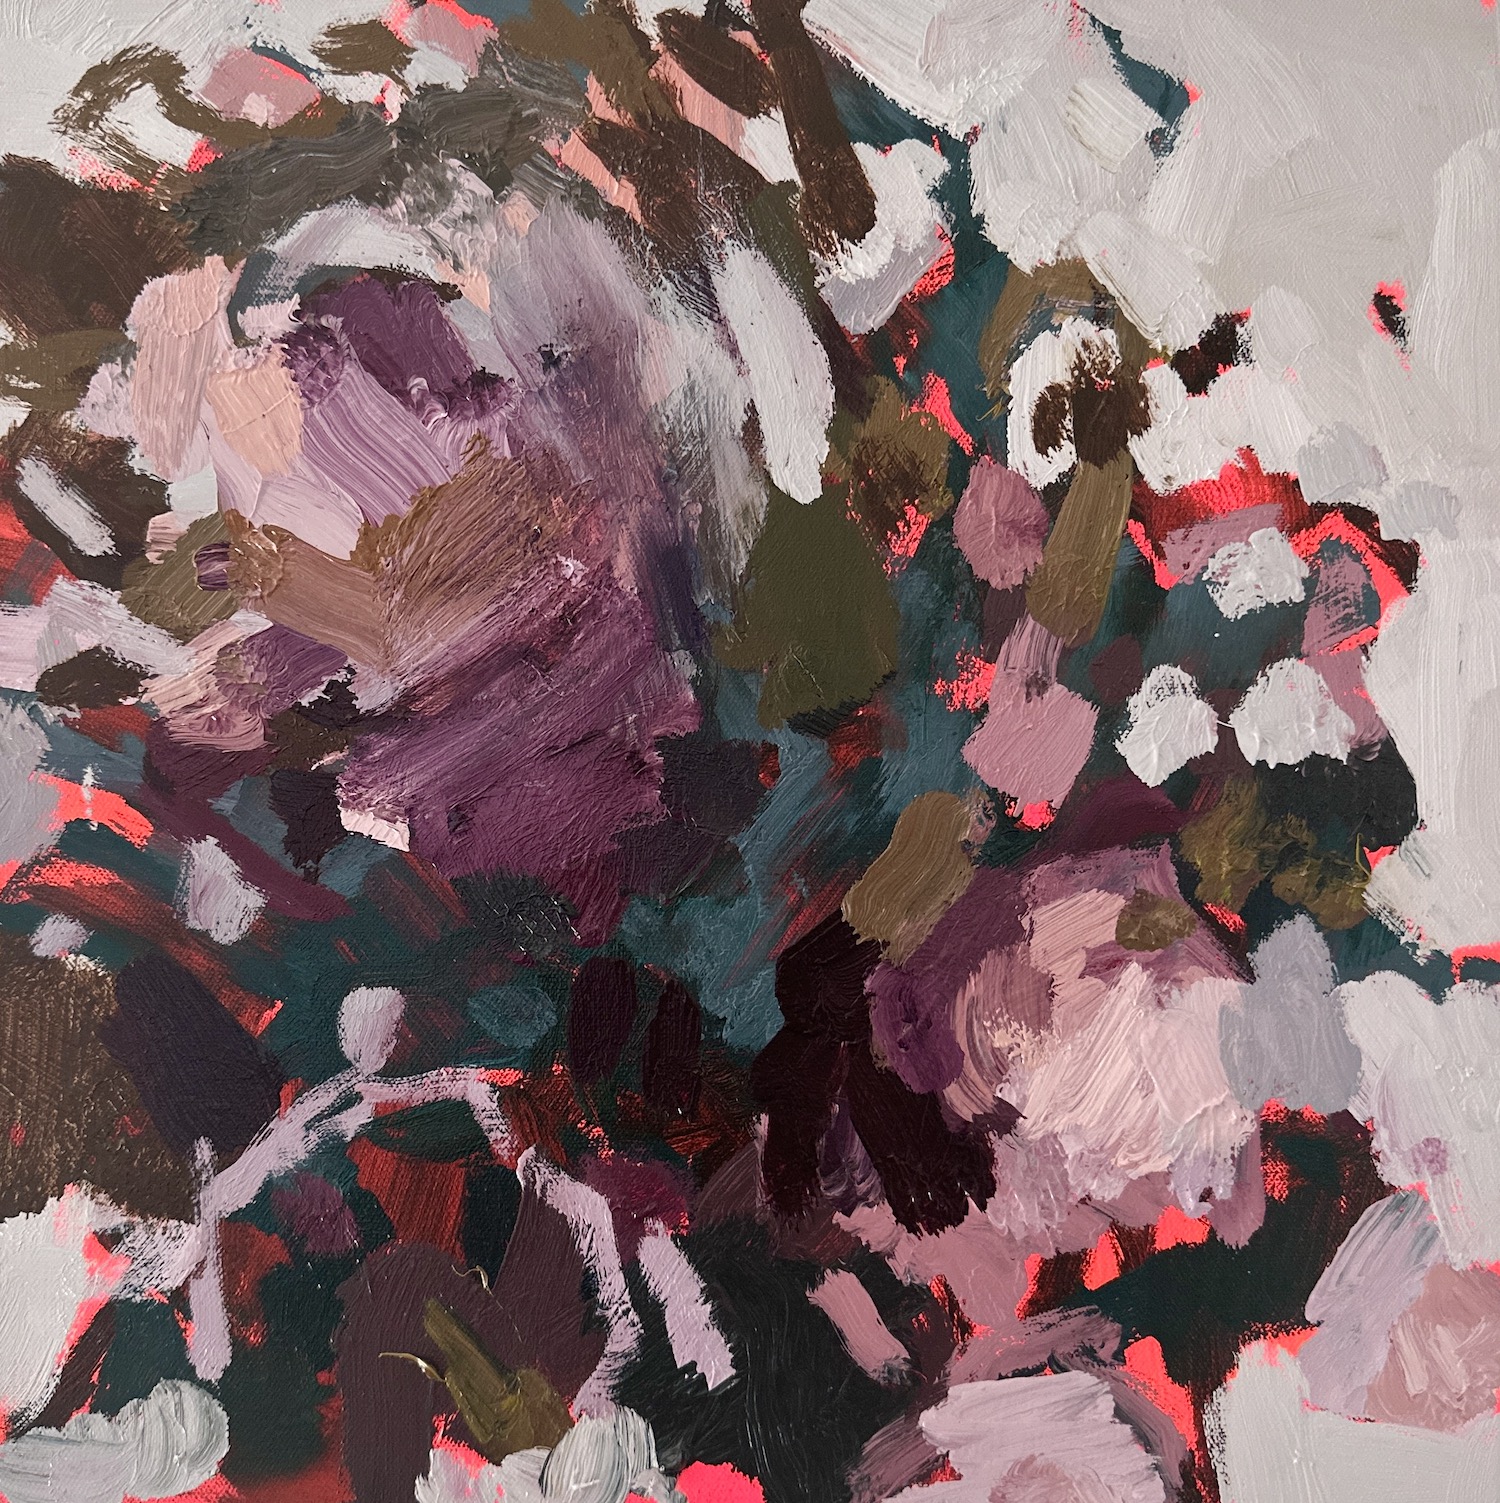 Llewellyn Skye 'Watch Me Bloom 3' 40x40cm acrylic & oil on canvas $2,000